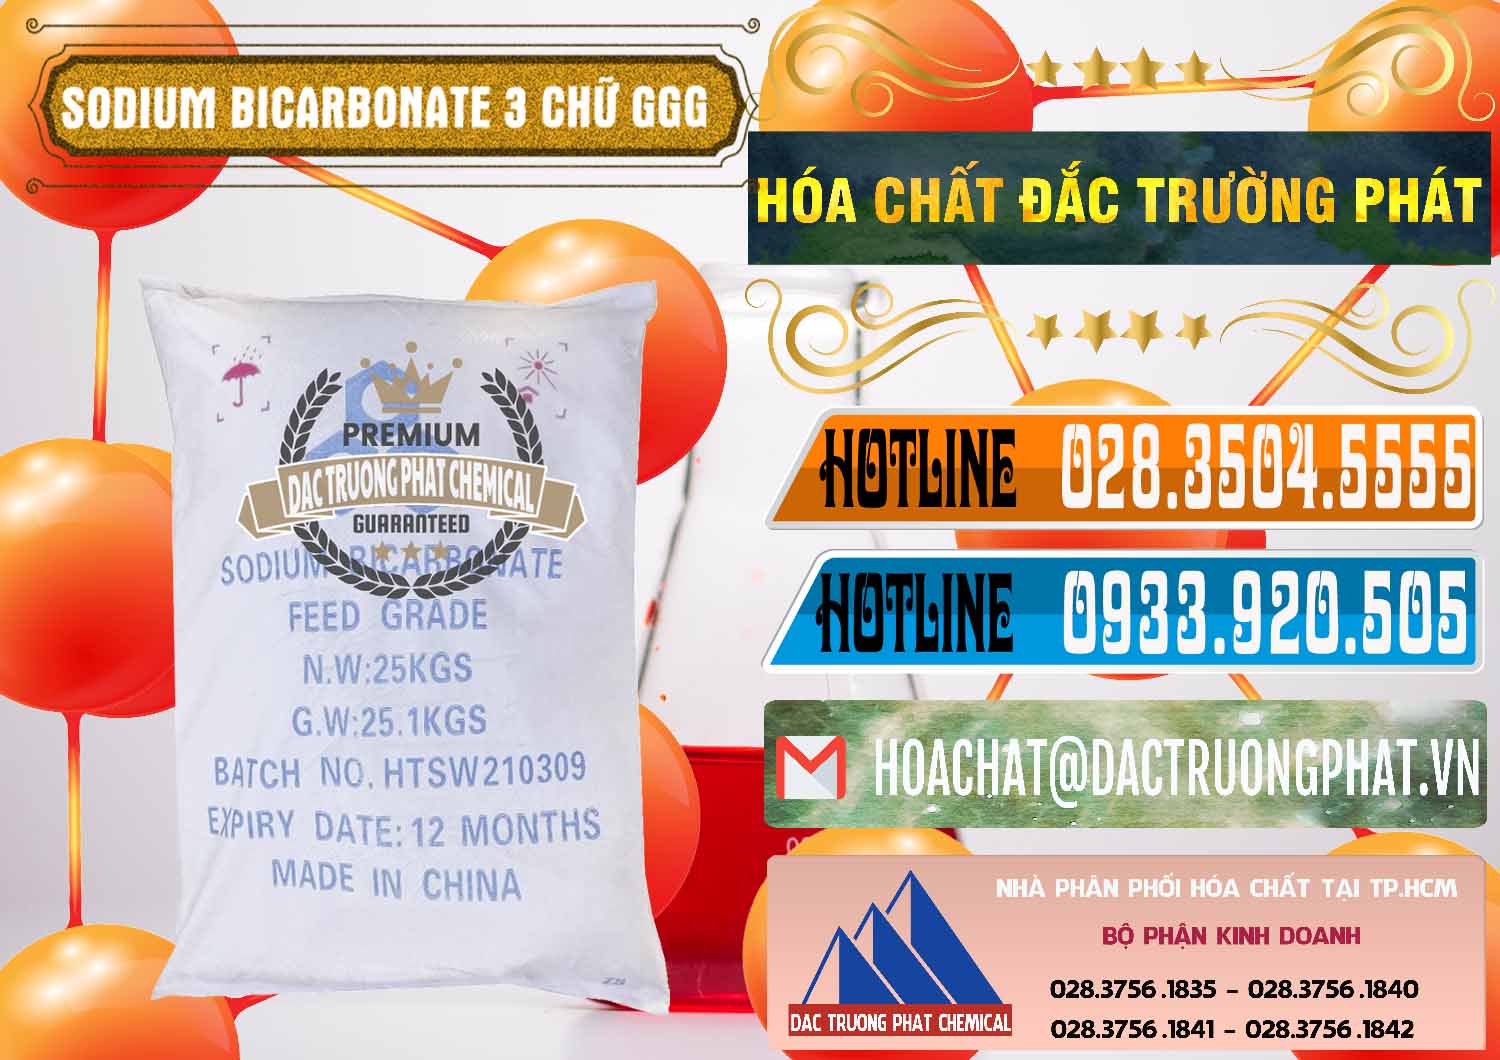 Cty chuyên bán _ phân phối Sodium Bicarbonate – Bicar NaHCO3 Food Grade 3 Chữ GGG Trung Quốc China - 0259 - Cty phân phối và kinh doanh hóa chất tại TP.HCM - stmp.net